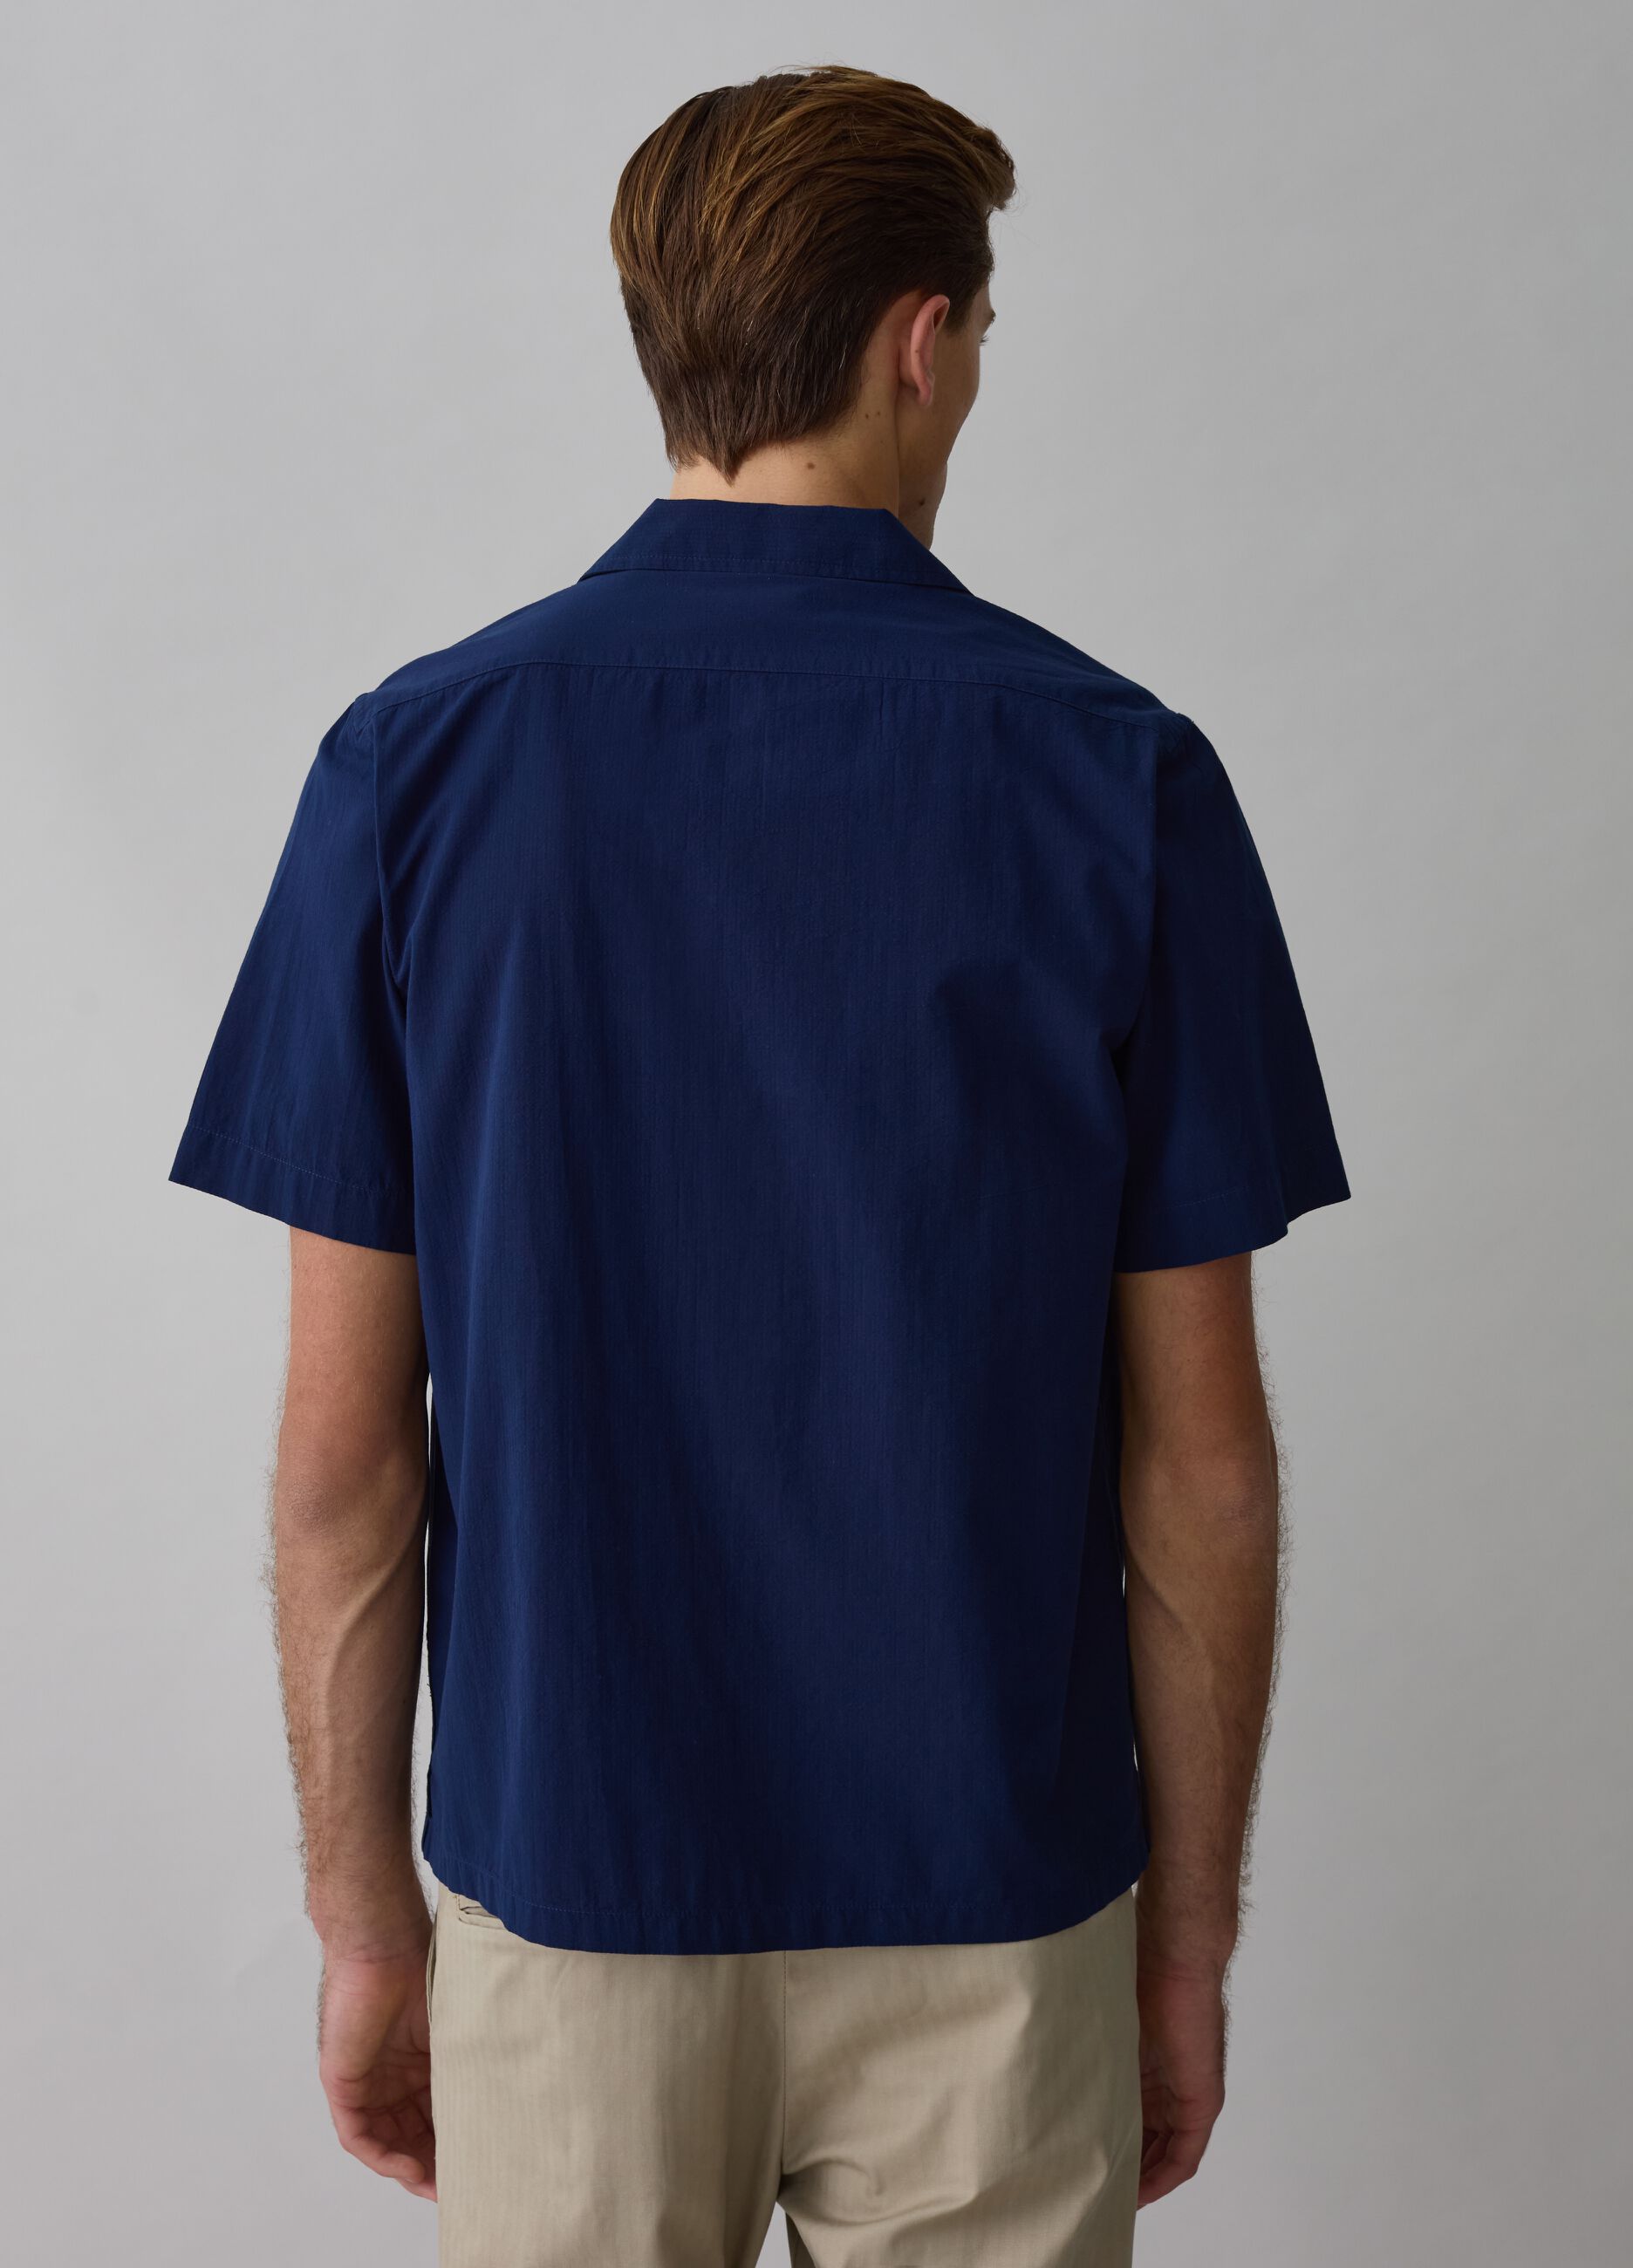 Short-sleeved shirt in seersucker with pocket